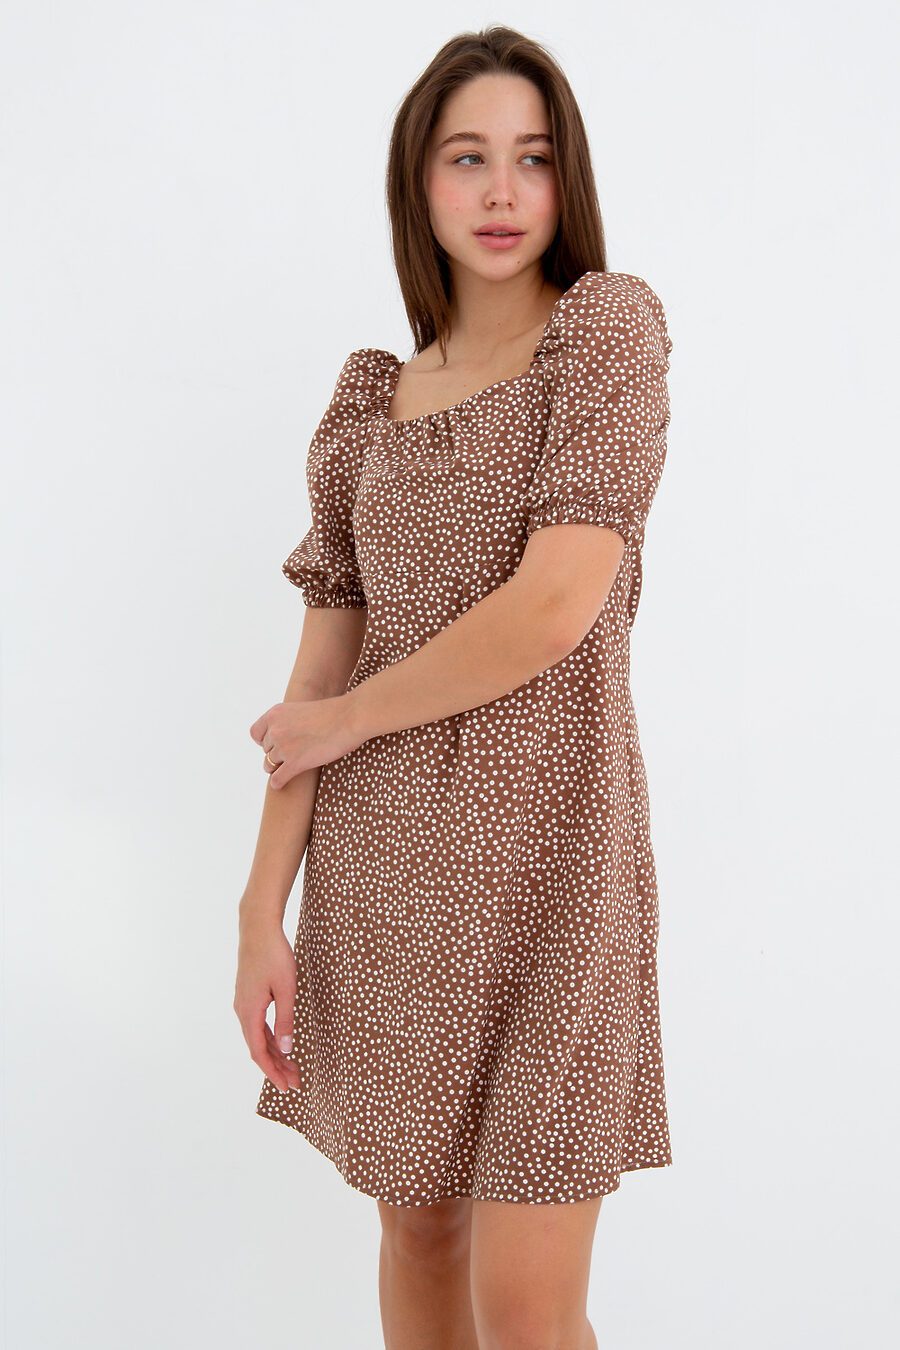 Платье П-5 для женщин НАТАЛИ 775465 купить оптом от производителя. Совместная покупка женской одежды в OptMoyo